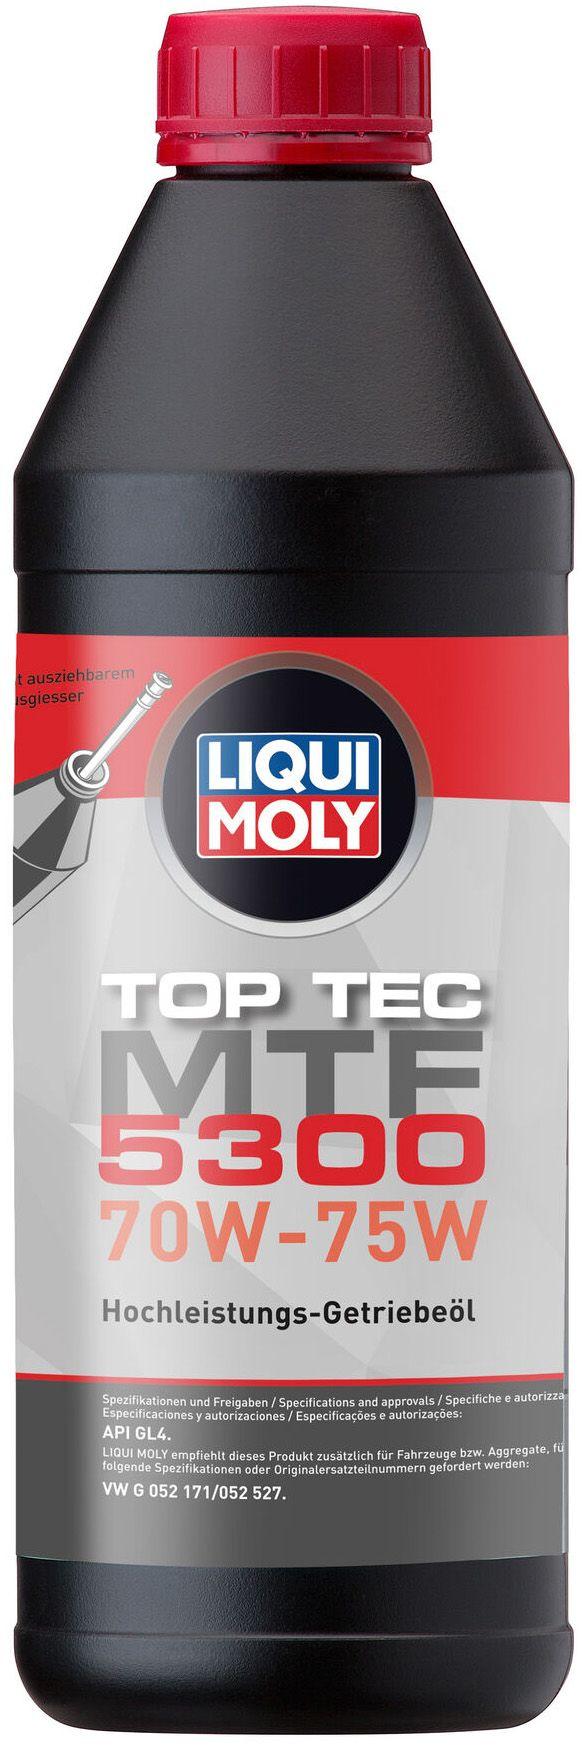 Трансмиссионное масло Liqui Moly Top Tec MTF 5300 70W-75W, 1 литр (21359)